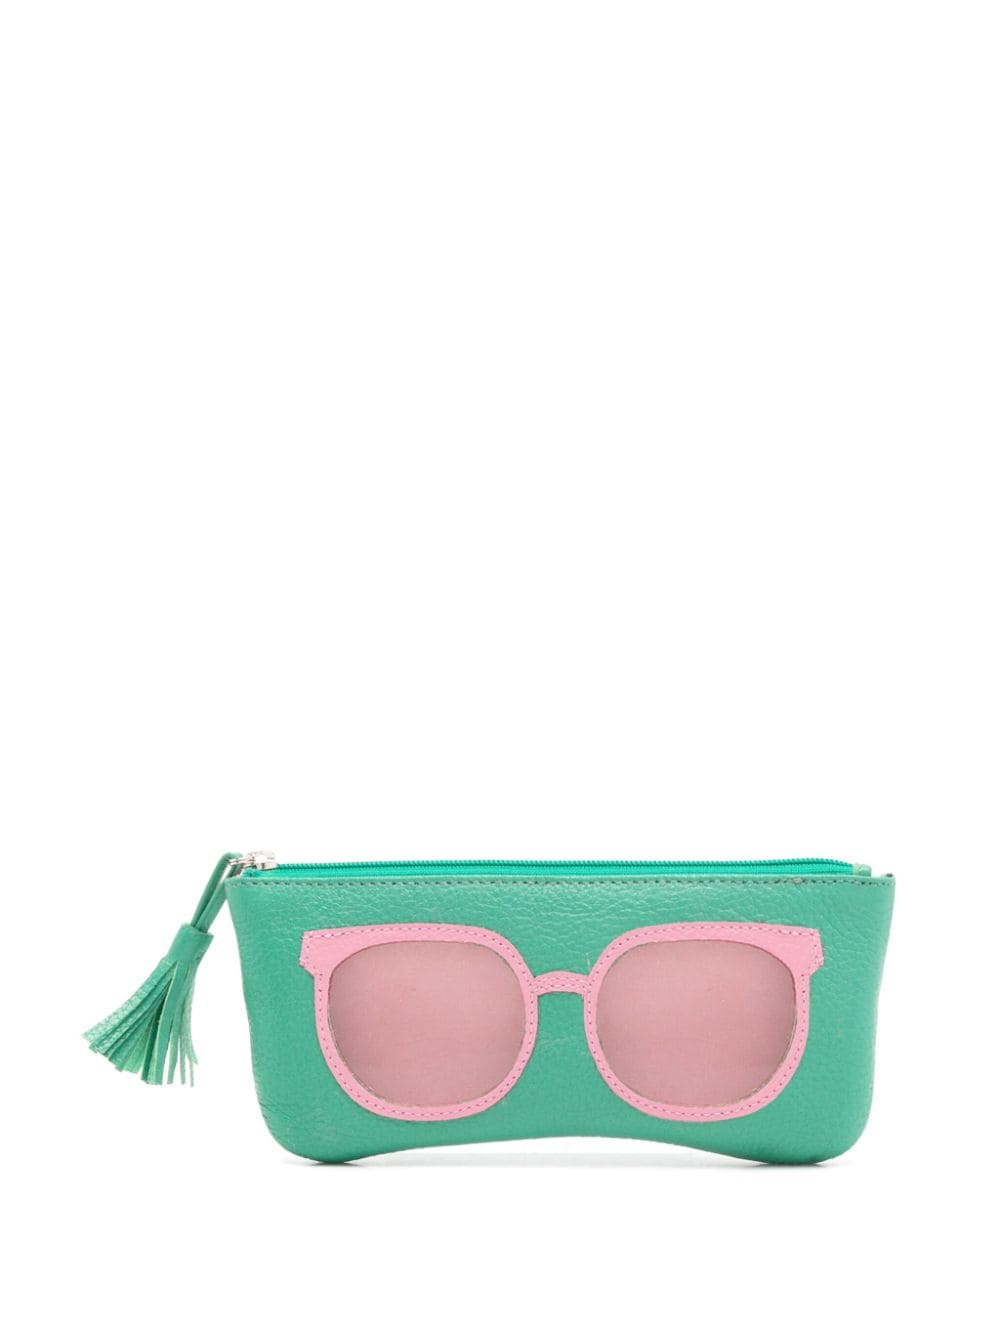 Sarah Chofakian sunglasses-print leather purse - Green von Sarah Chofakian